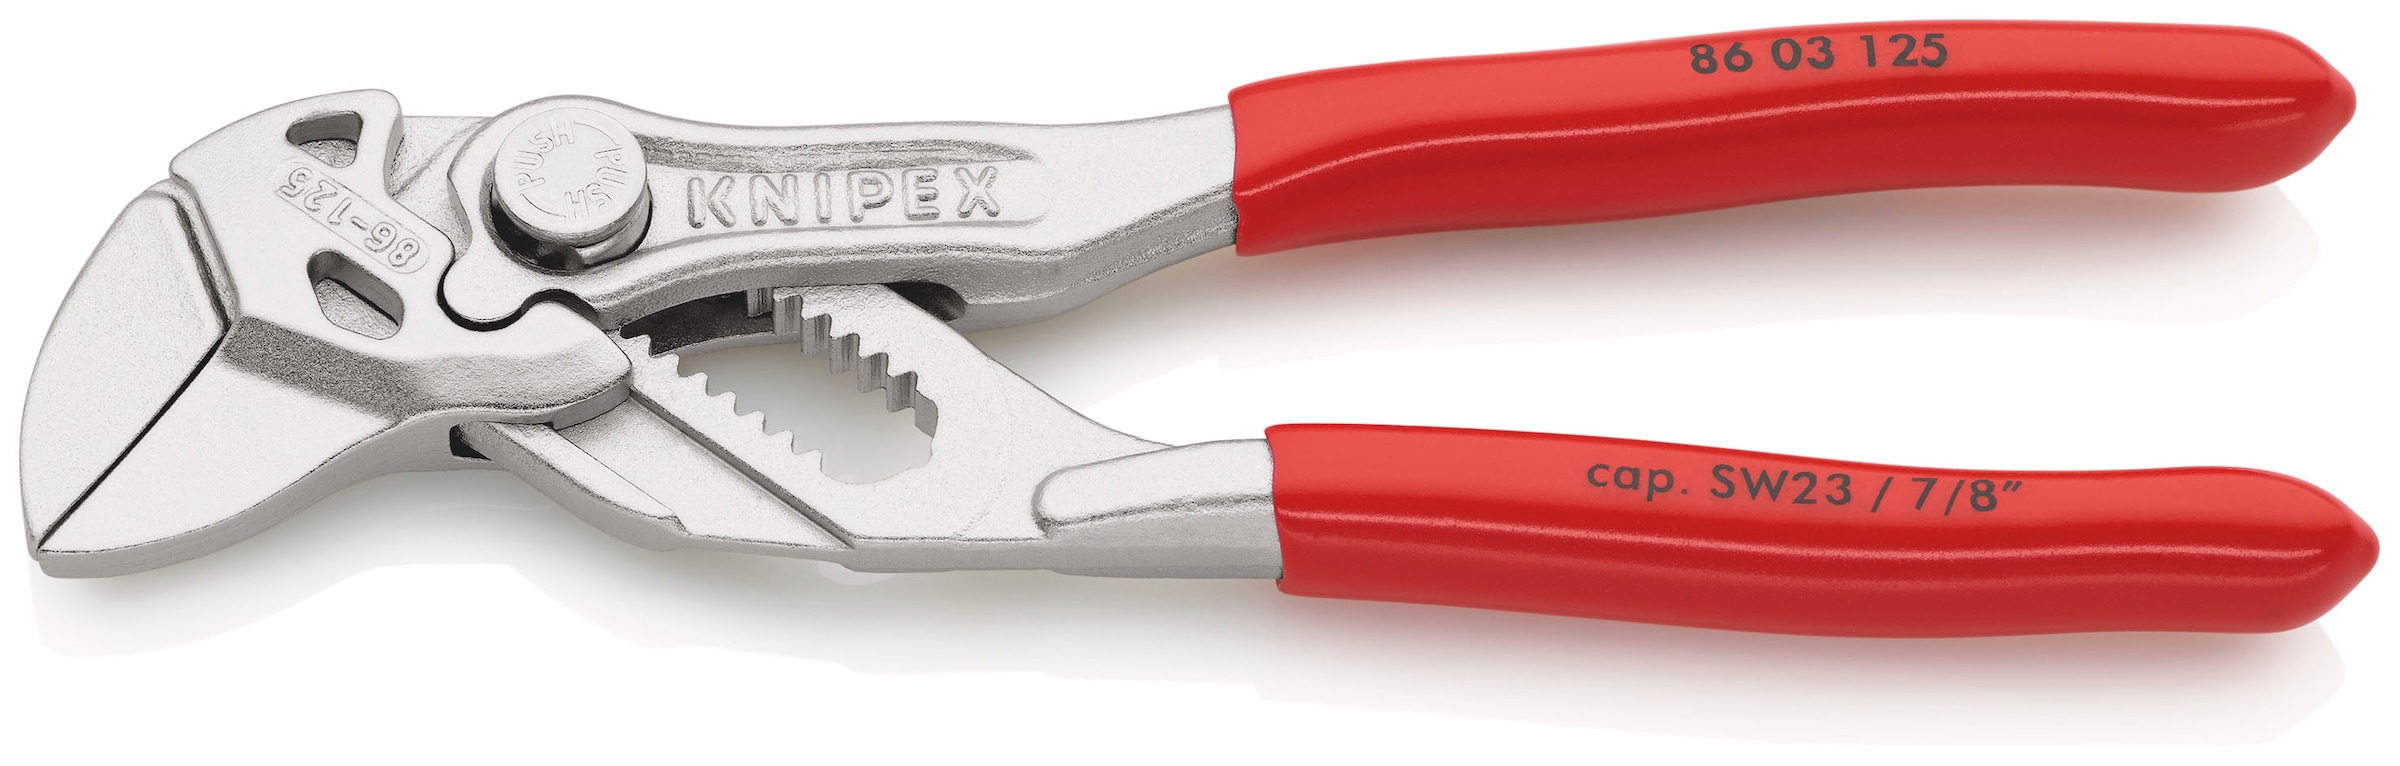 Knipex Zangenschlüssel »86 03 125 Mini, Zange und Schraubenschlüssel in einem Werkzeug«, (1 tlg.), verchromt, mit Kunststoff überzogen 125 mm